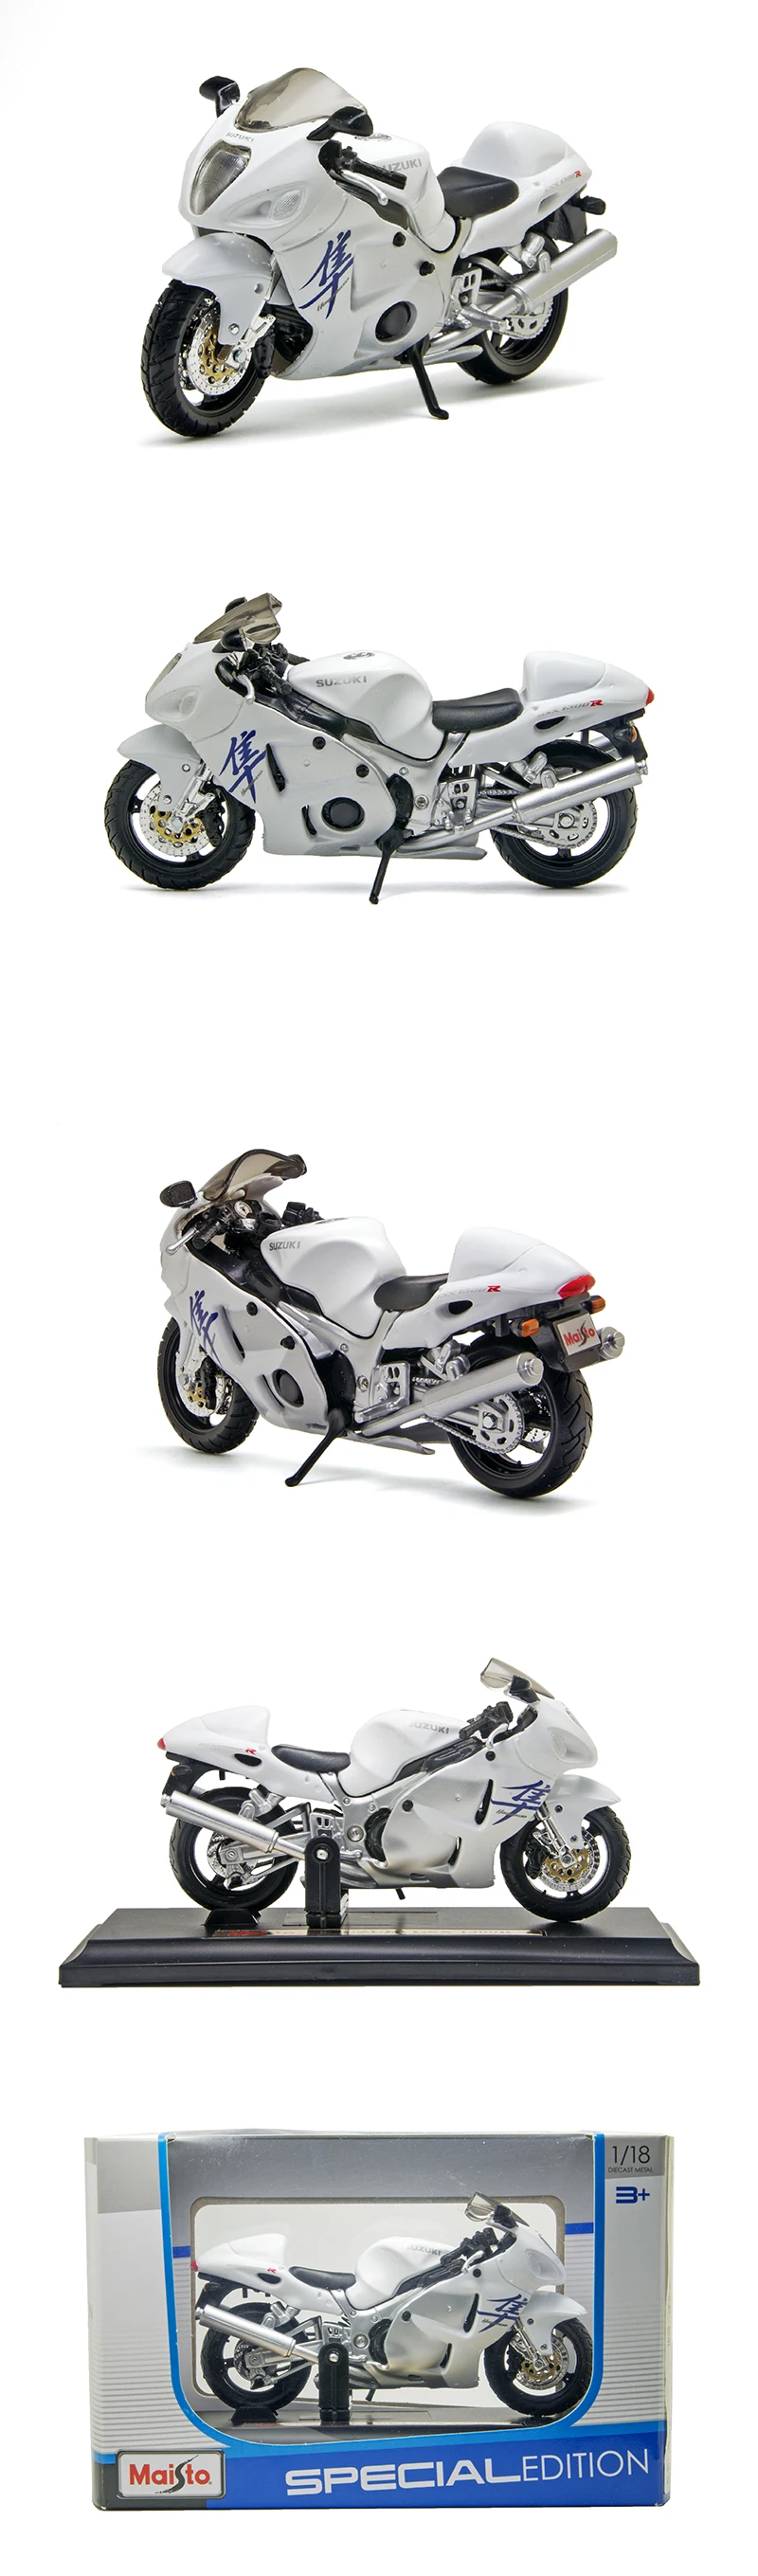 Maisto 1:18 Модель мотоцикла Suzuki GSX1300R модель велосипеда Модель мотоцикла из сплава миниатюрная гоночная игрушка для коллекции подарков